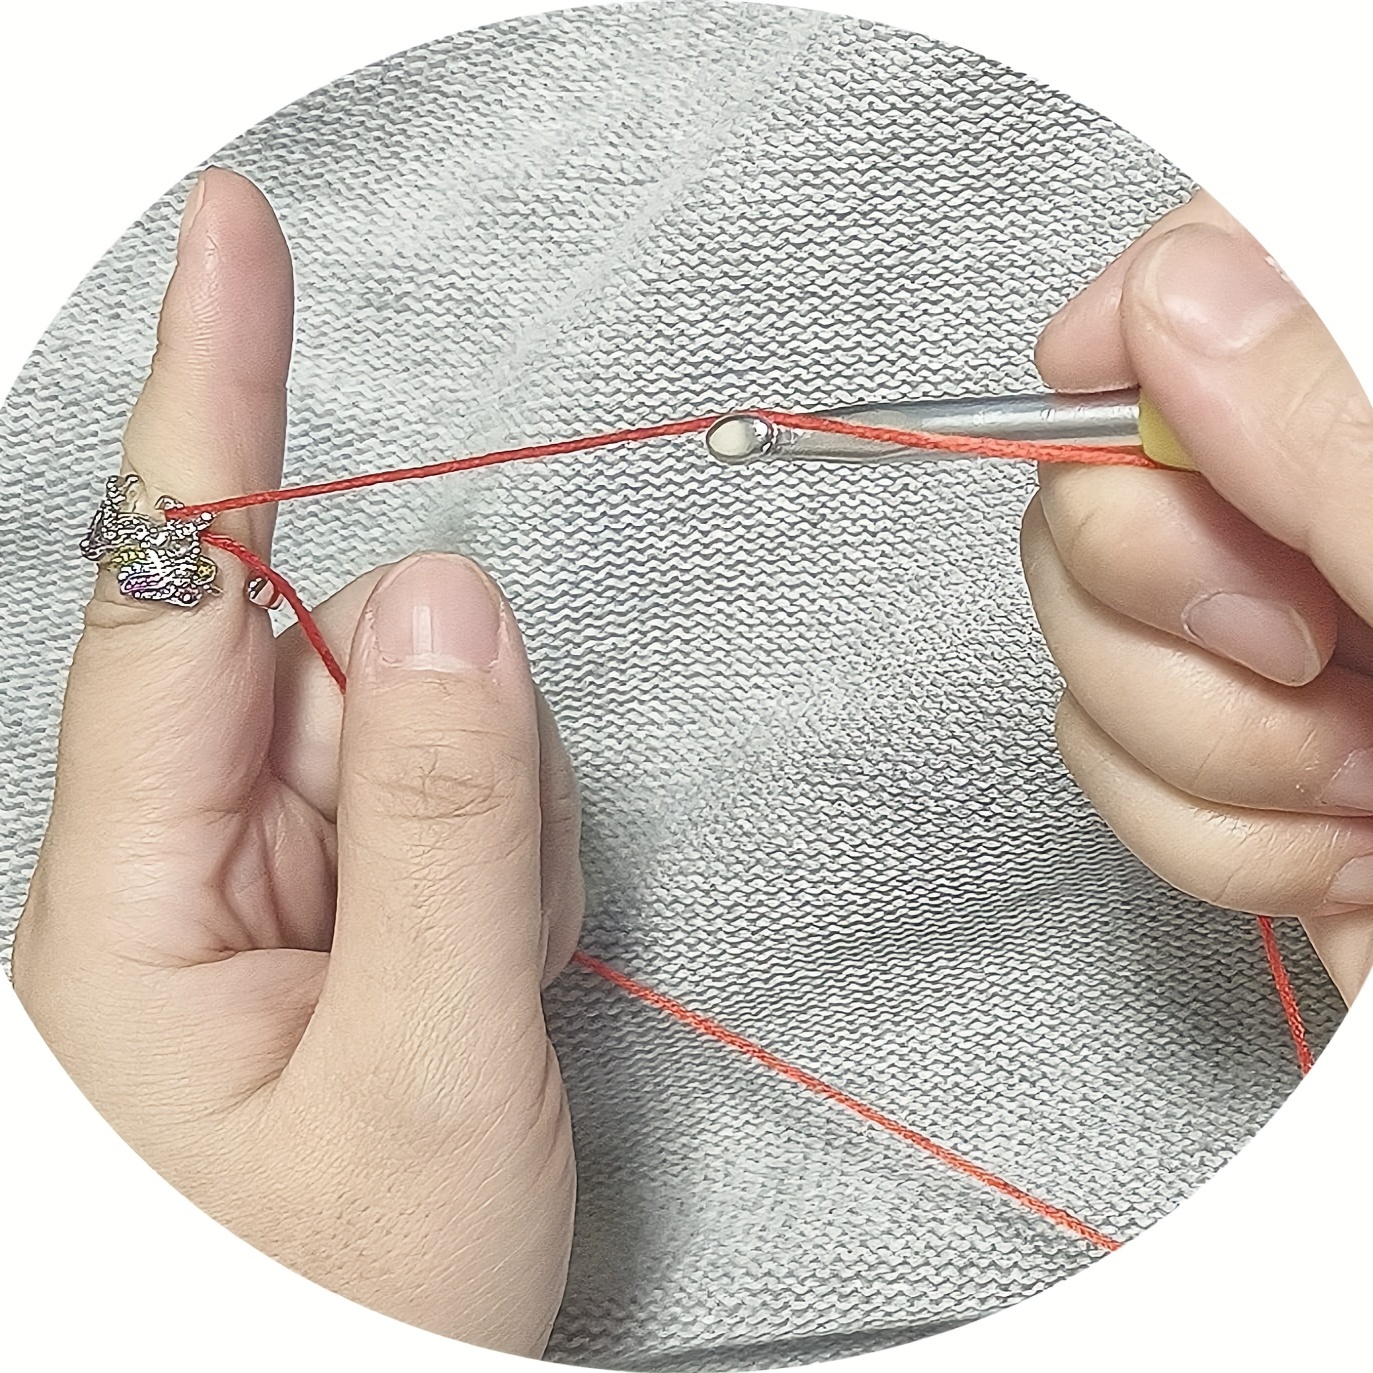 Adjustable Finger Crochet Ring Crochet Knitting - Temu